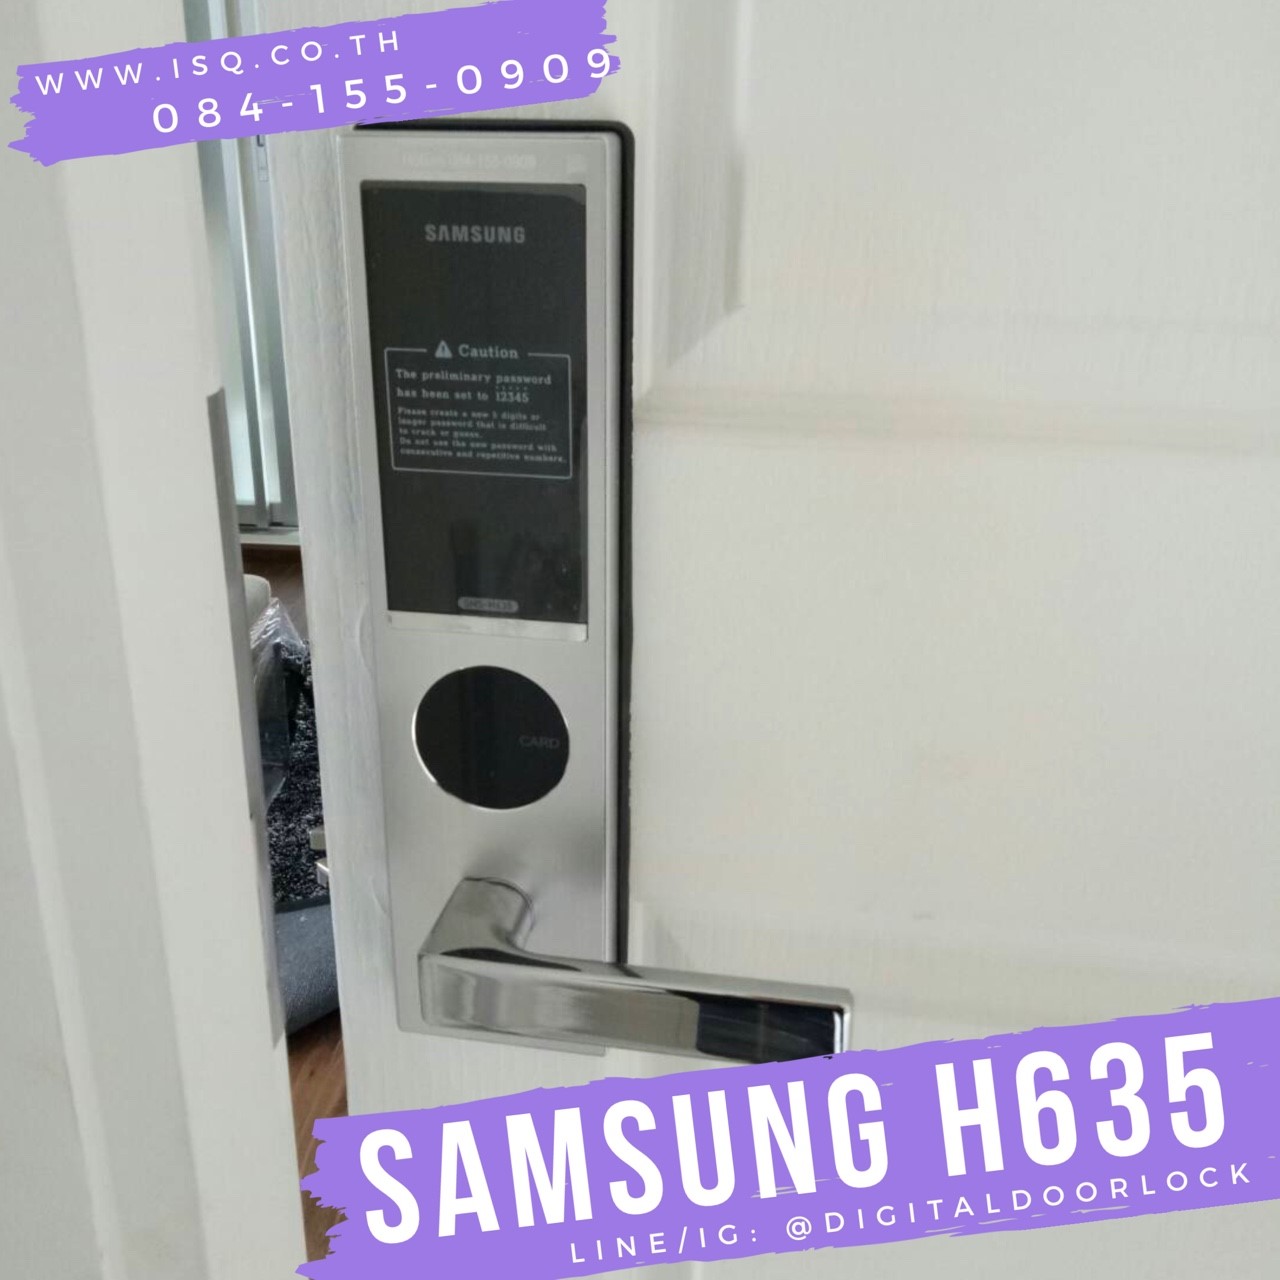 Samsung SHS-H635